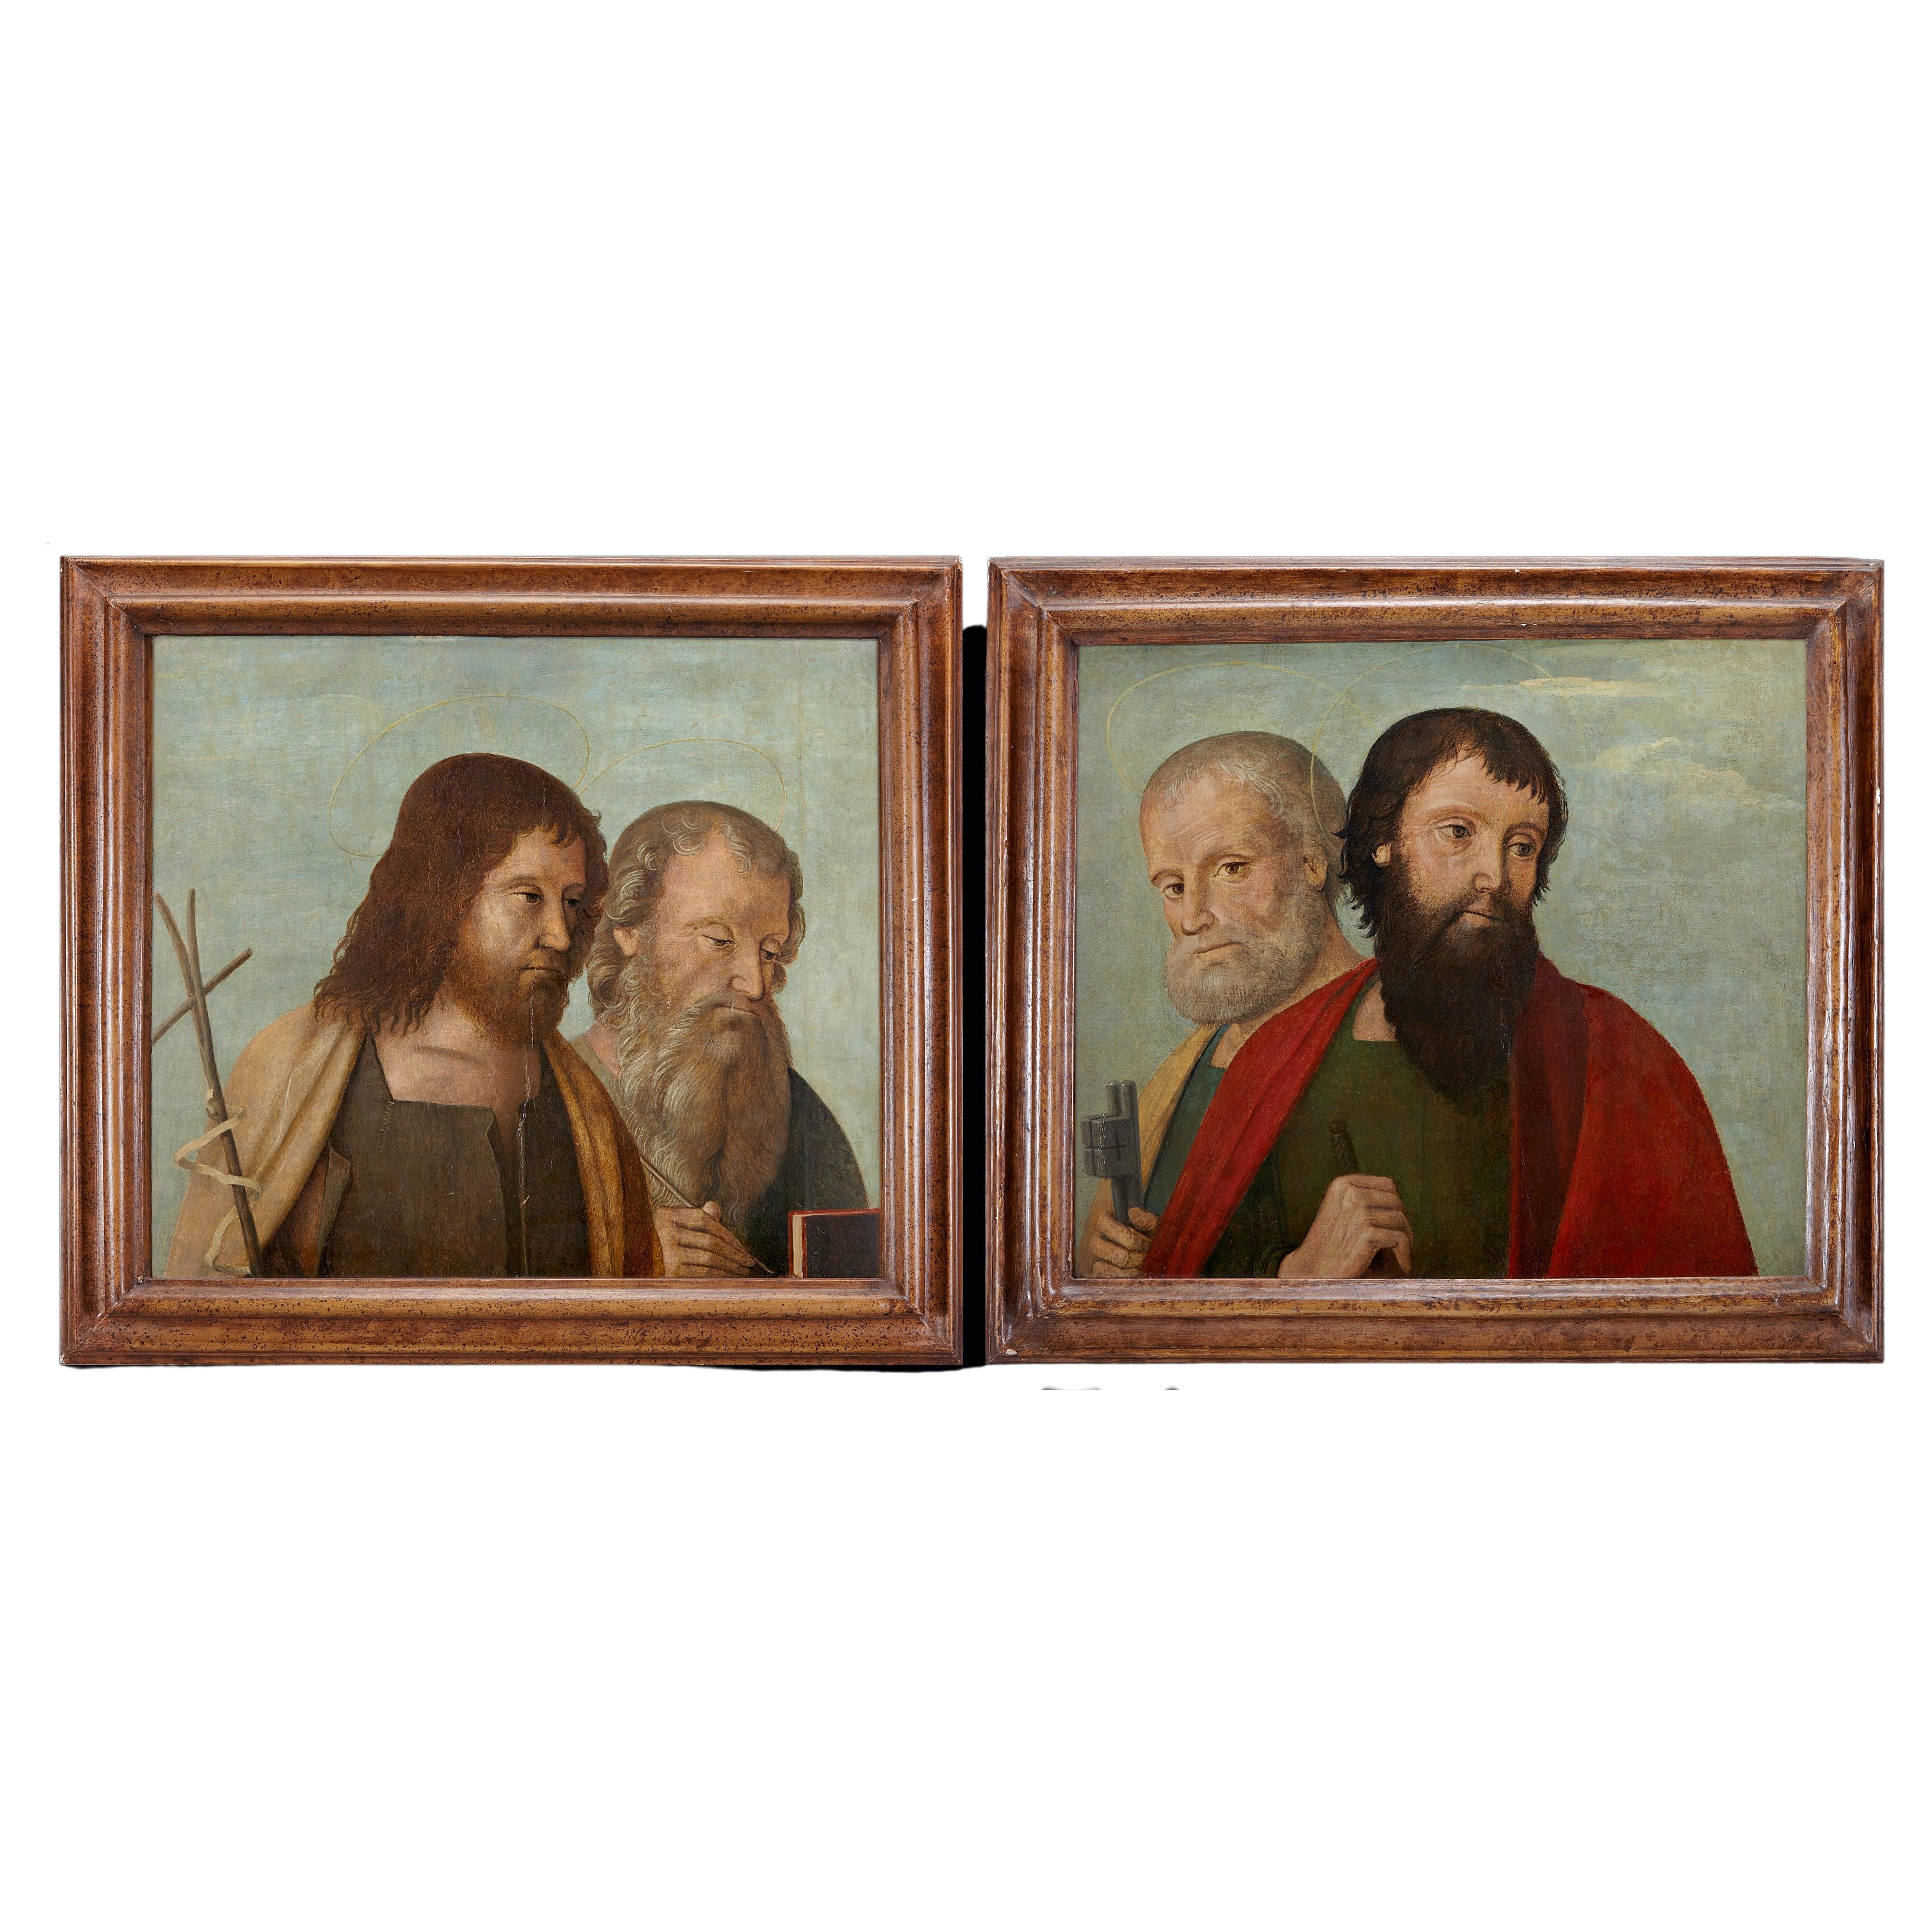 Deux panneaux vénitiens du début du XVIe siècle représentant des saints et des apôtres